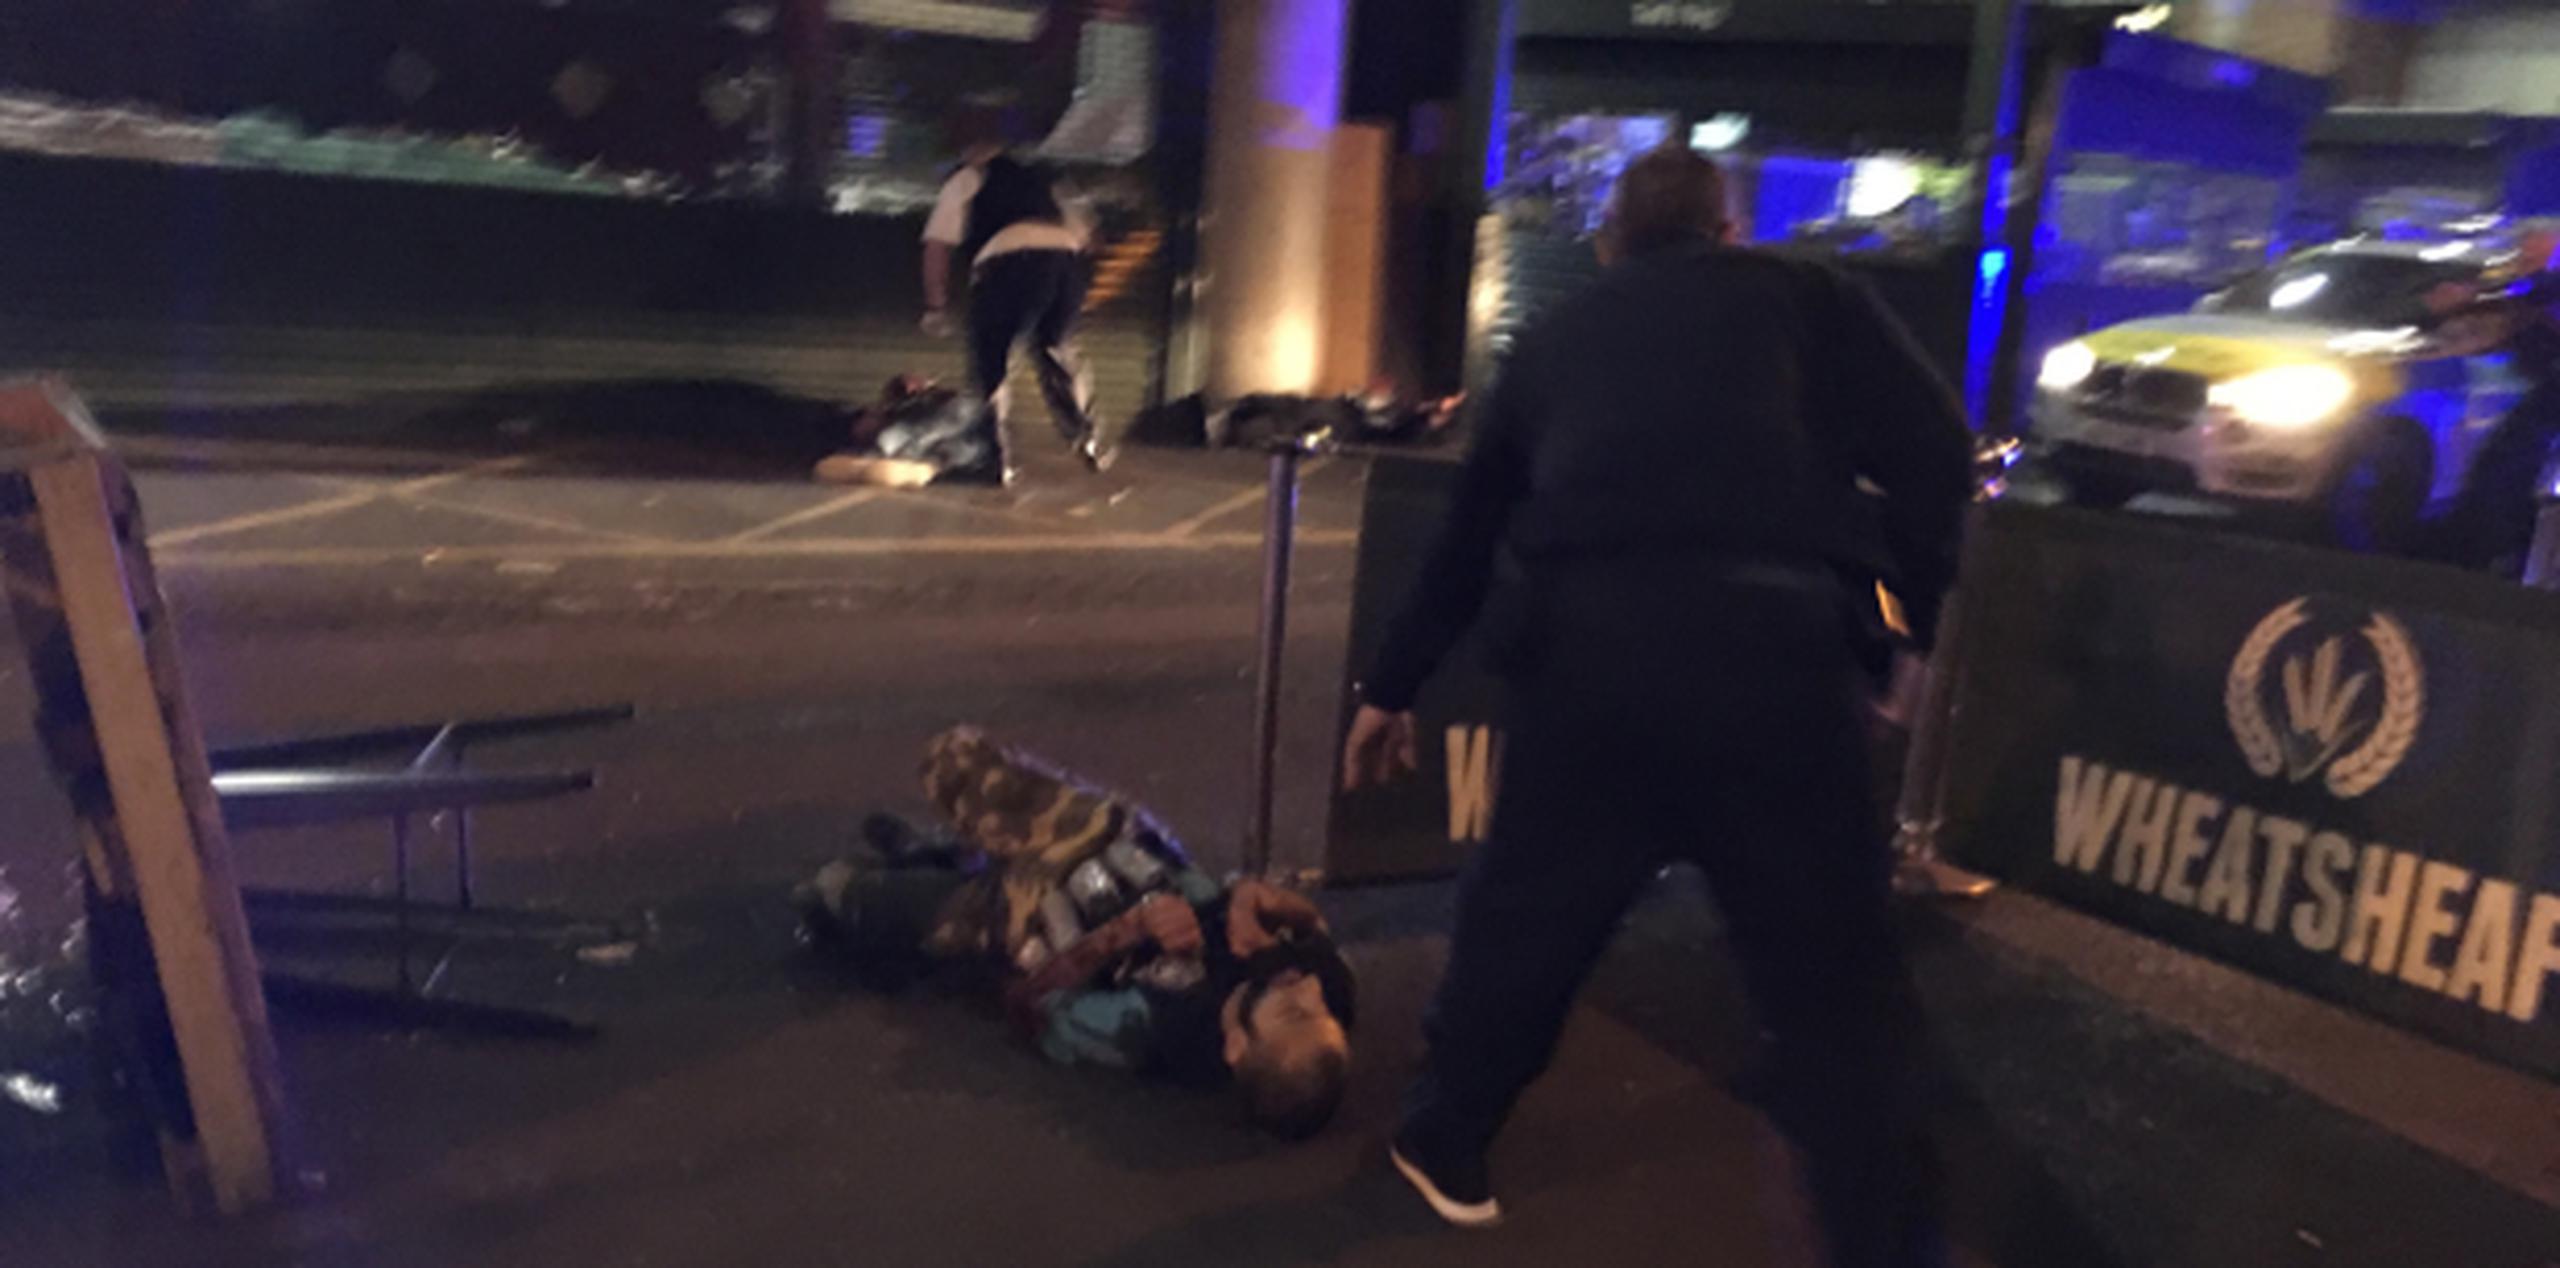 Uno de los sospechosos del ataque terrorista de Londres ya abatido en el suelo llevaba en su pecho un chaleco con potes atados a su alrededor, aunque luego se determinó que no eran bombas. (AP)